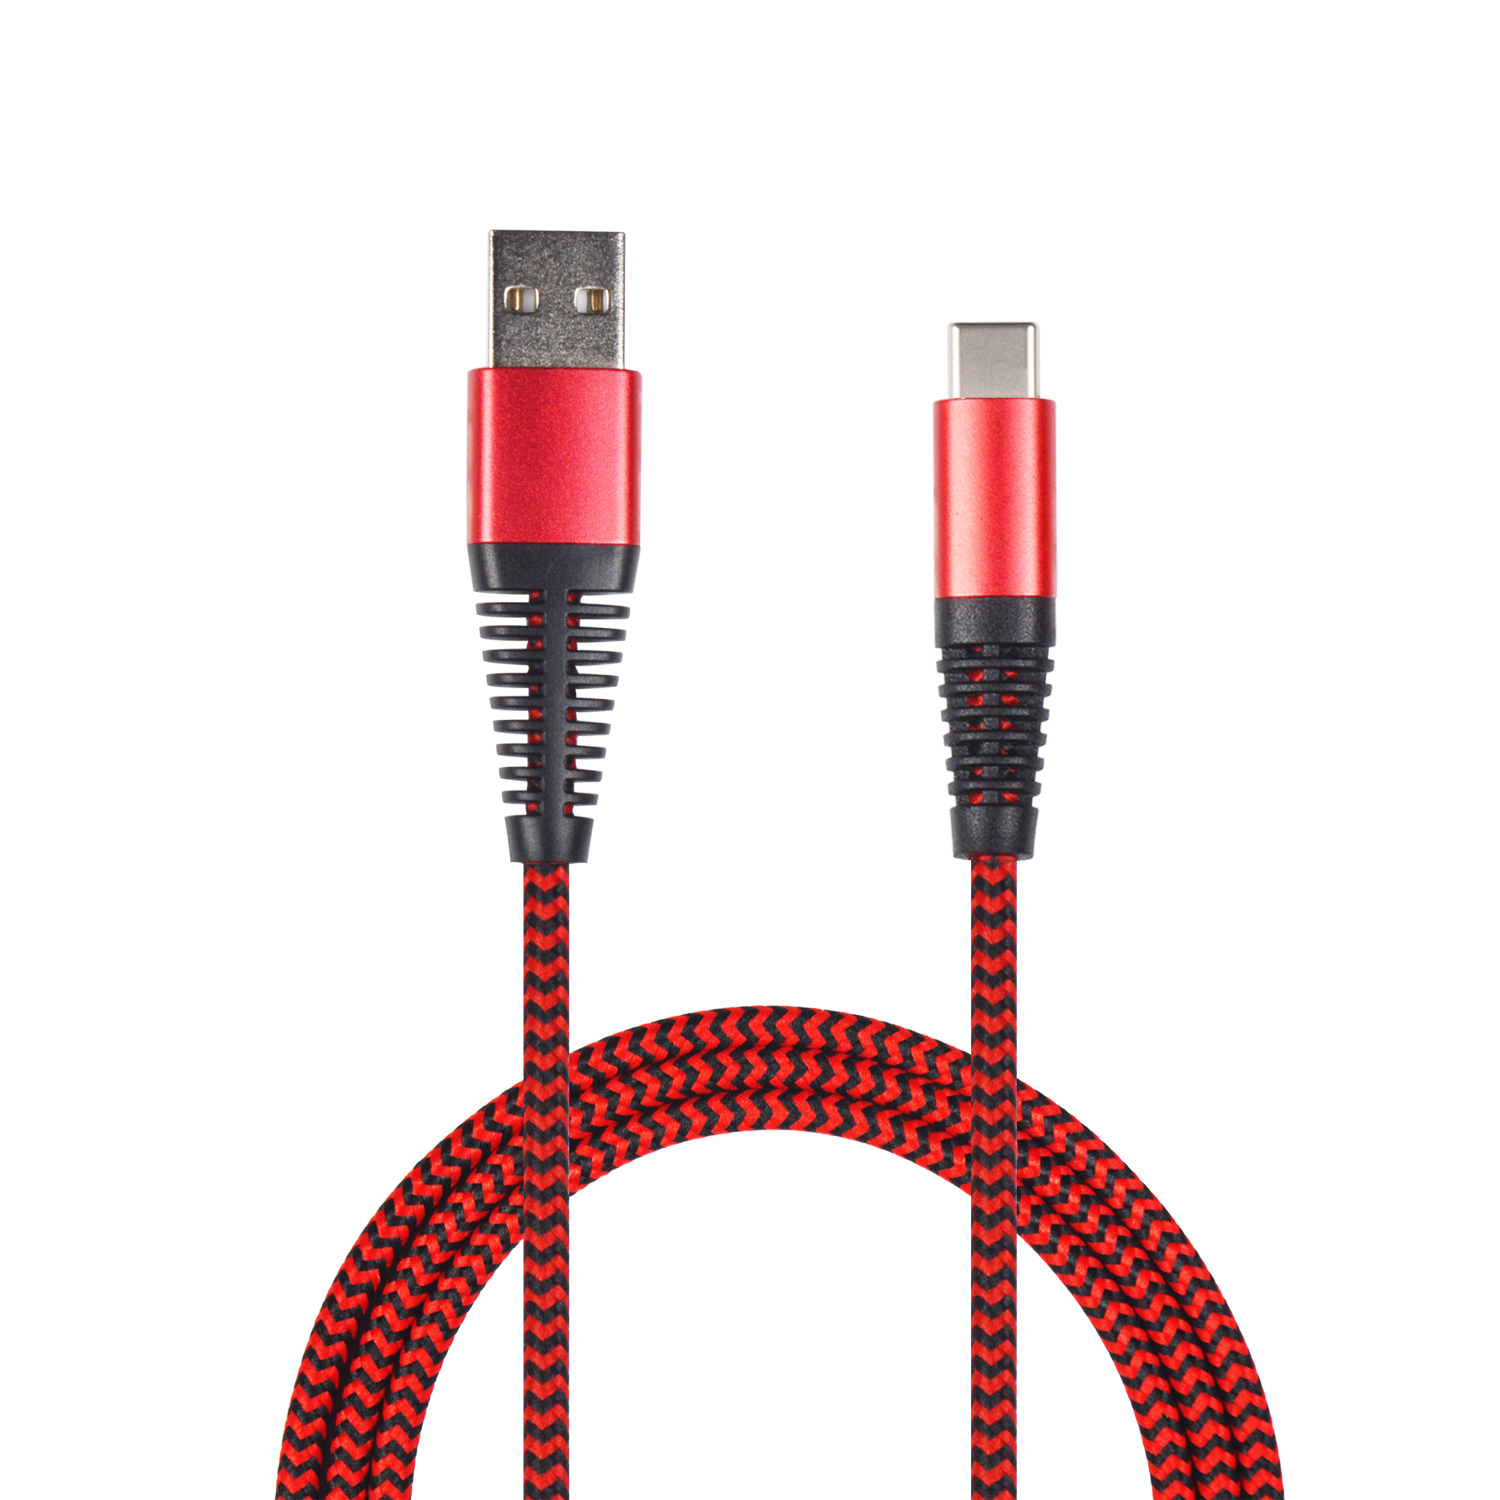 Bild von USB Datenkabel - rot - 100cm